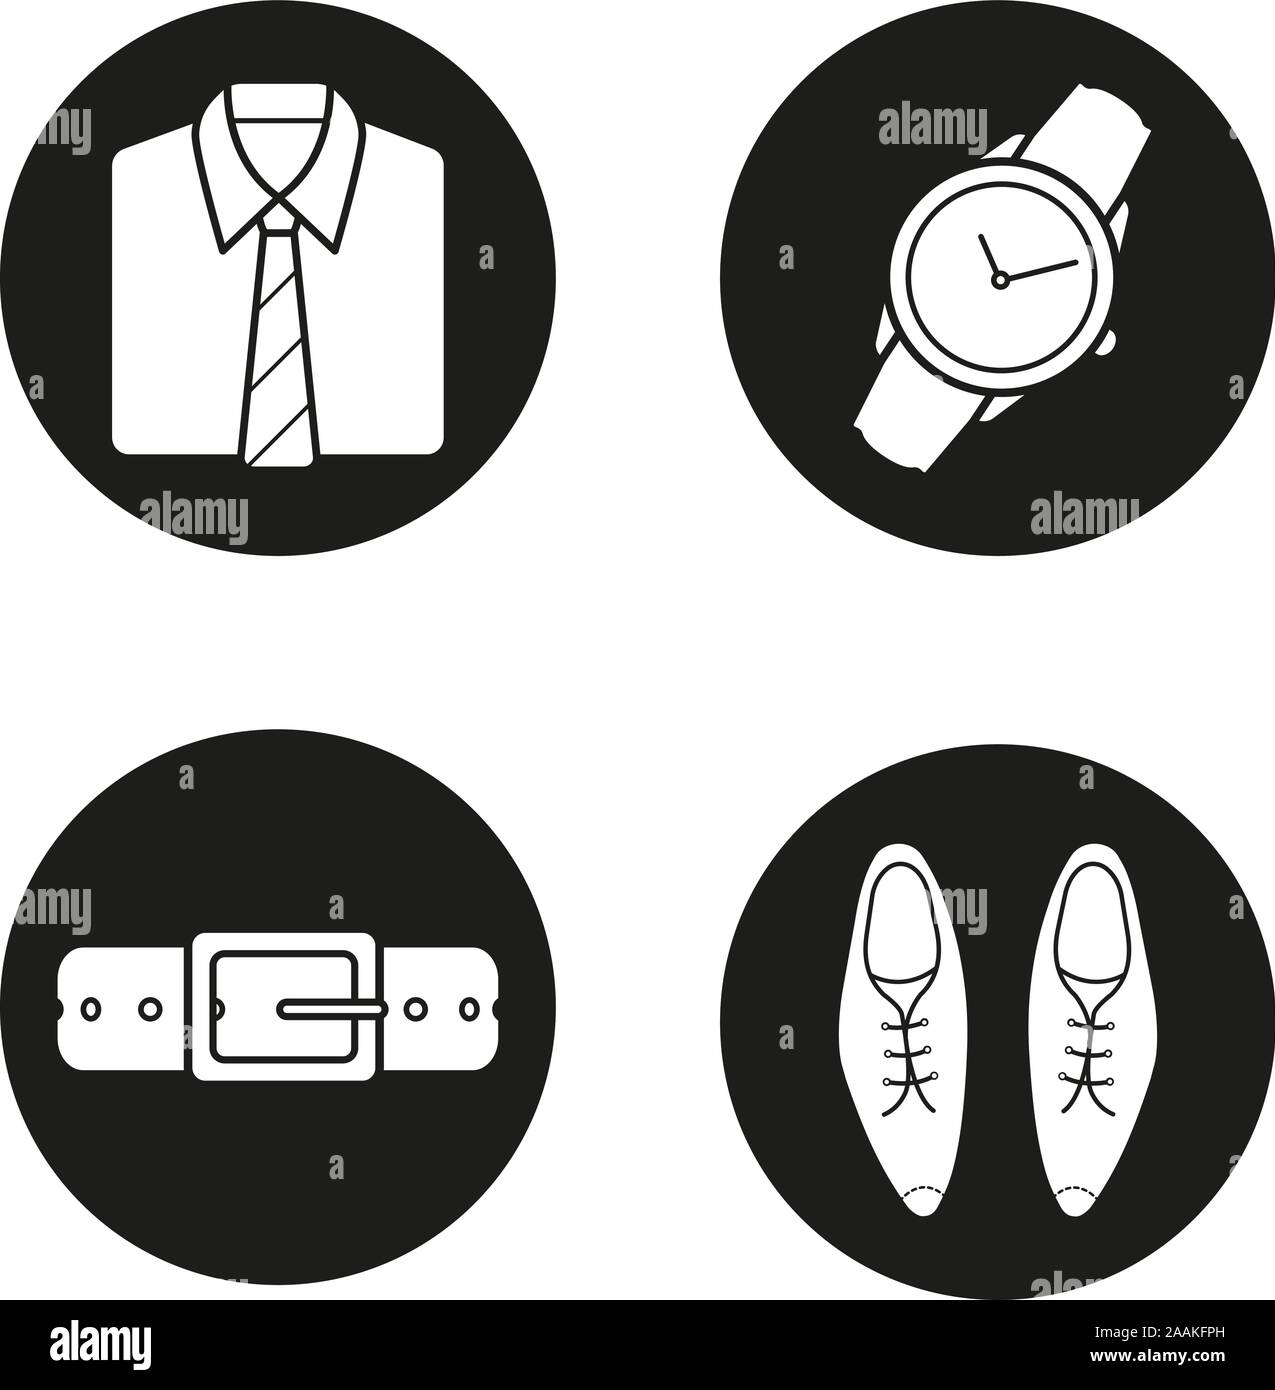 Herren Zubehör Symbole gesetzt. Hemd und Krawatte, Armbanduhr, Ledergürtel und klassische Schuhe. Vektor weisse Silhouetten Abbildungen in schwarzen Kreisen Stock Vektor